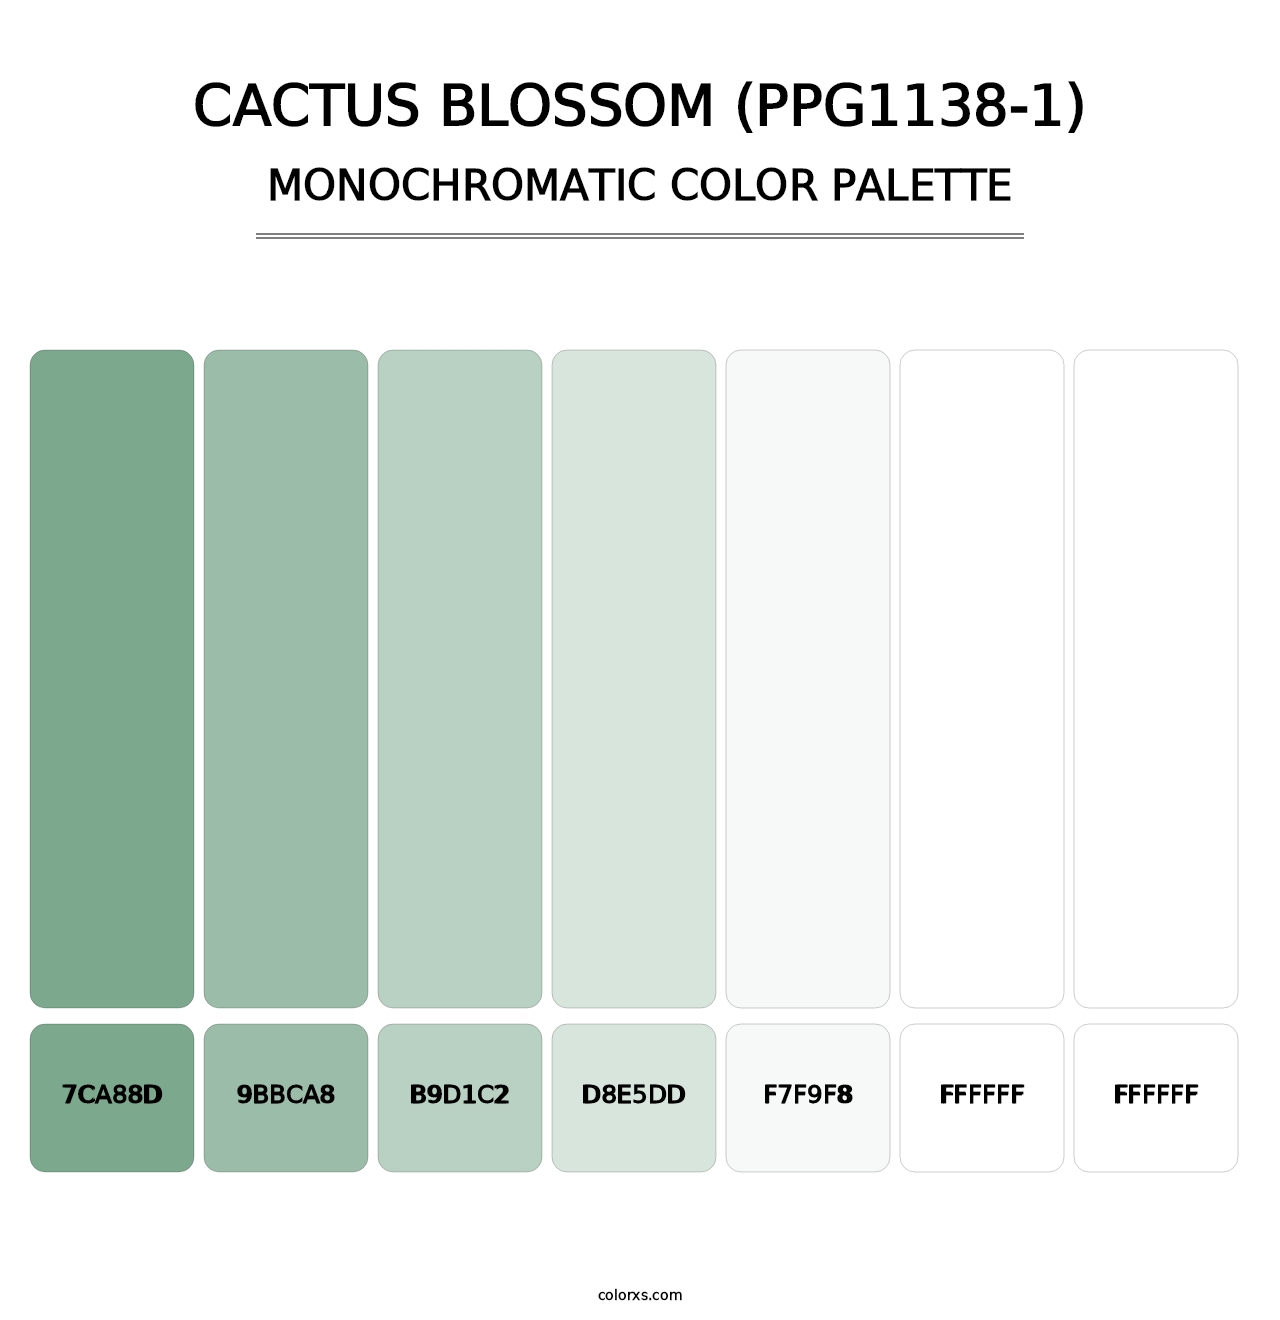 Cactus Blossom (PPG1138-1) - Monochromatic Color Palette